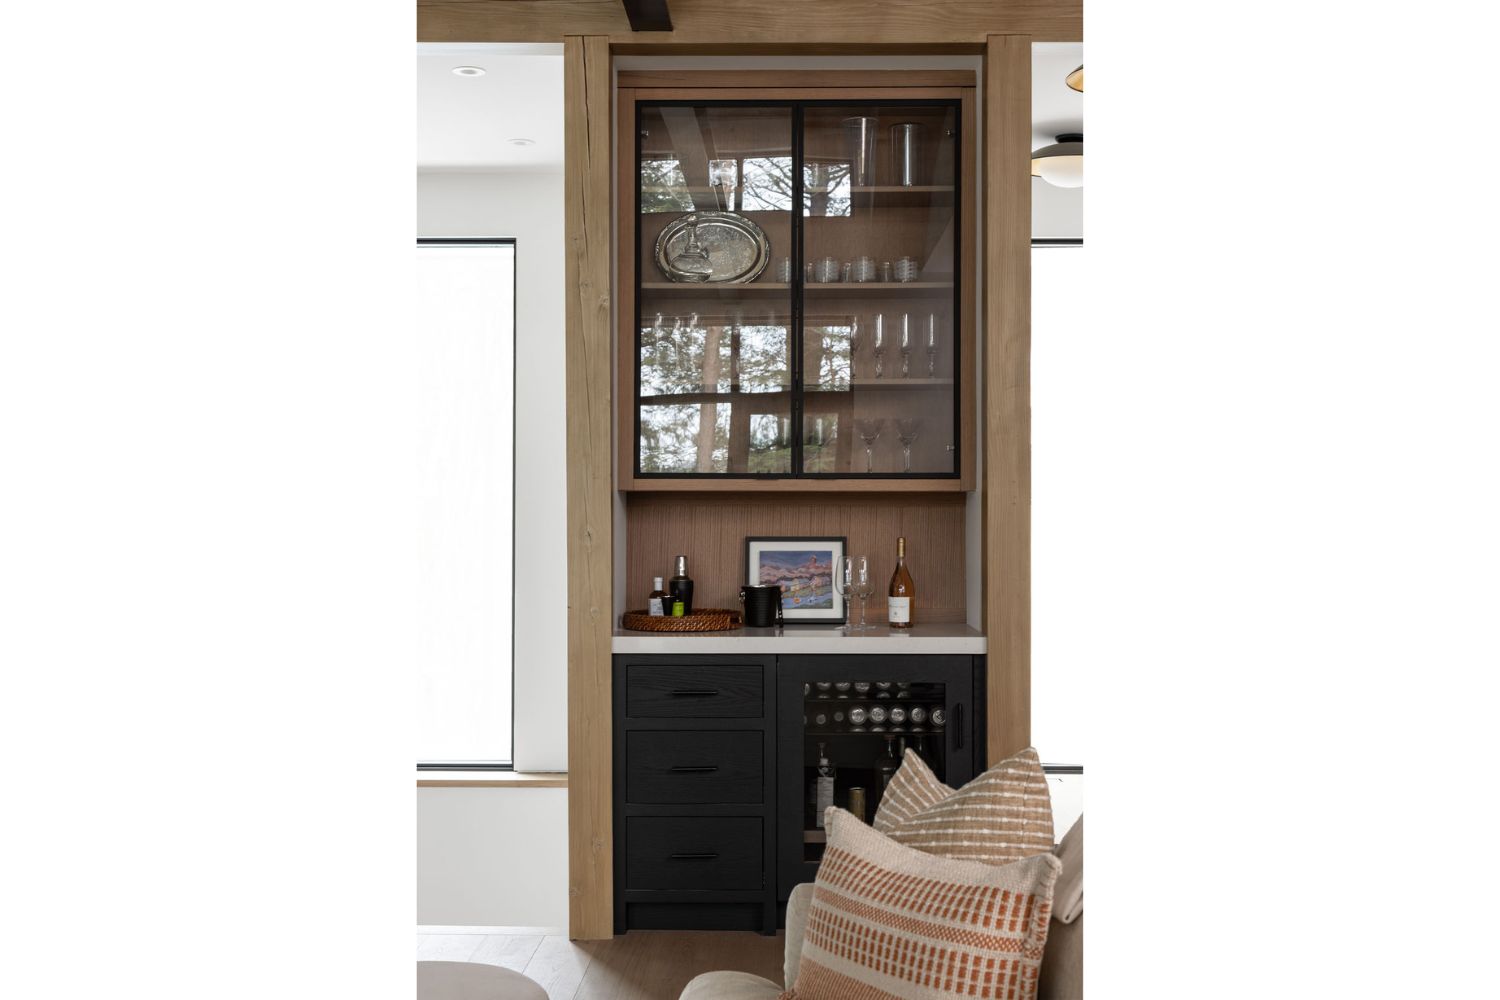 Project Fieldale: Wall bar with oak cabinets